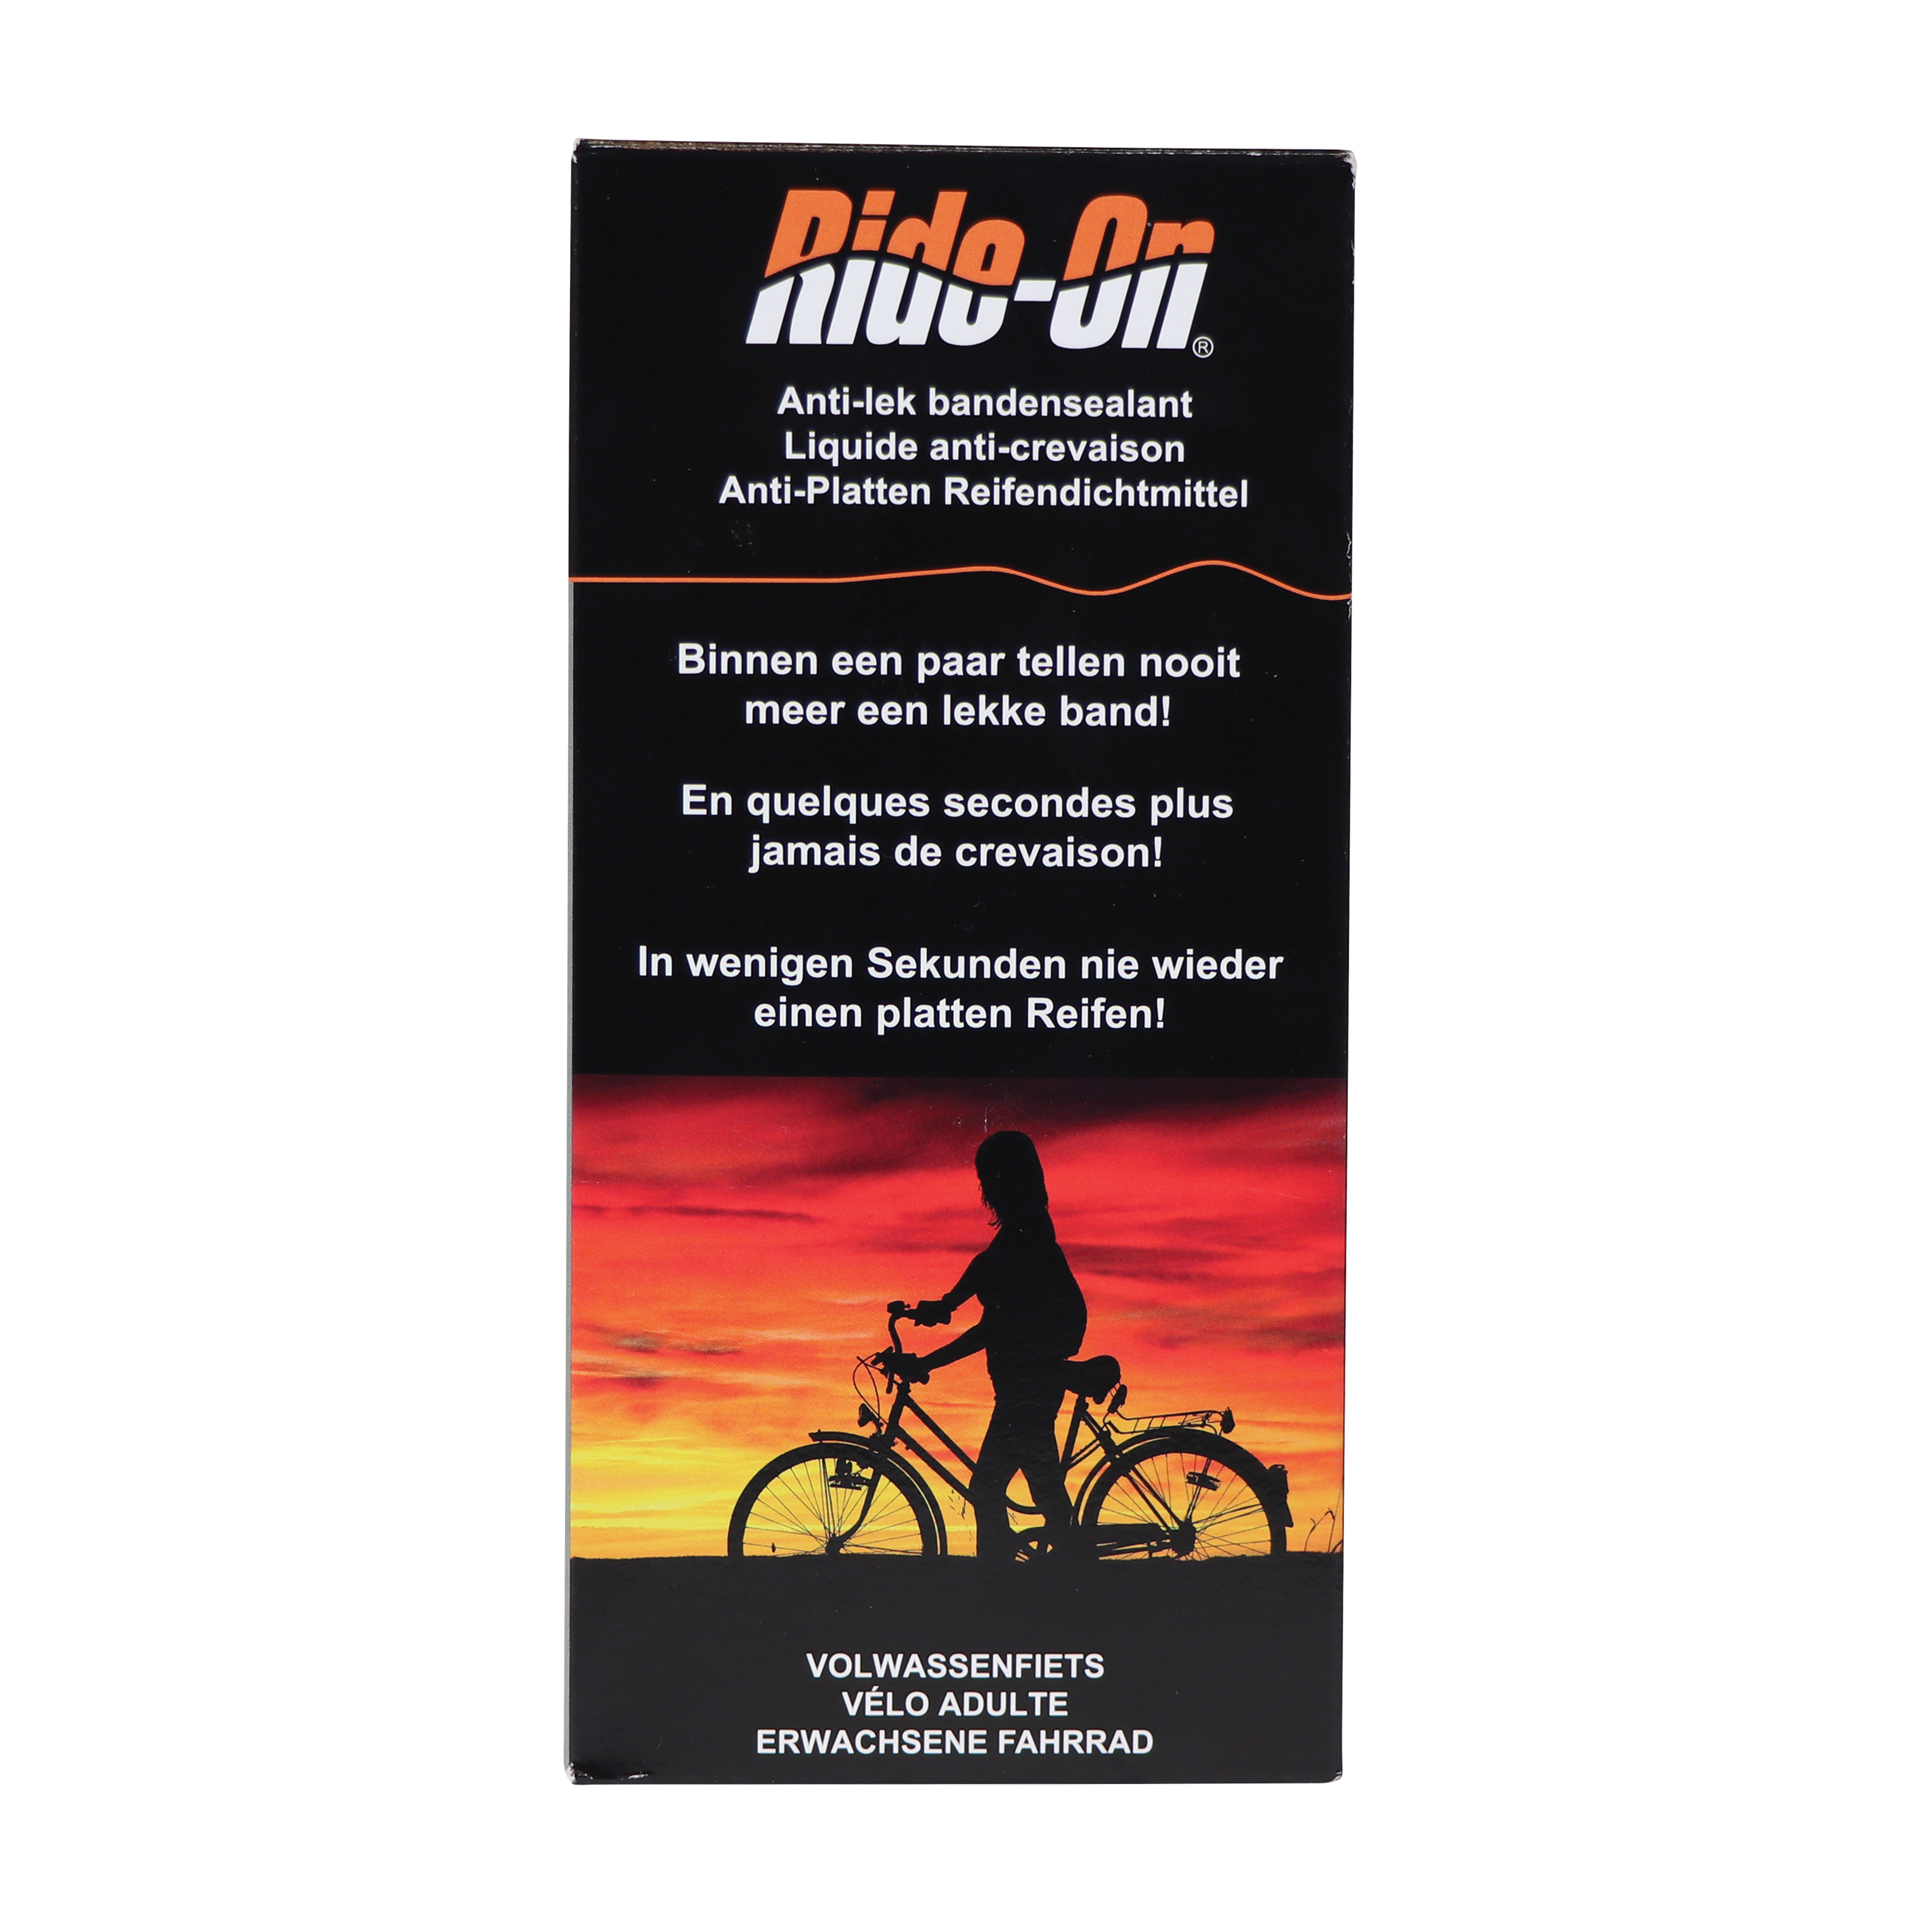 Ride-On Ride-On Bike-On Volwassen Fiets 2x125ml 1800402